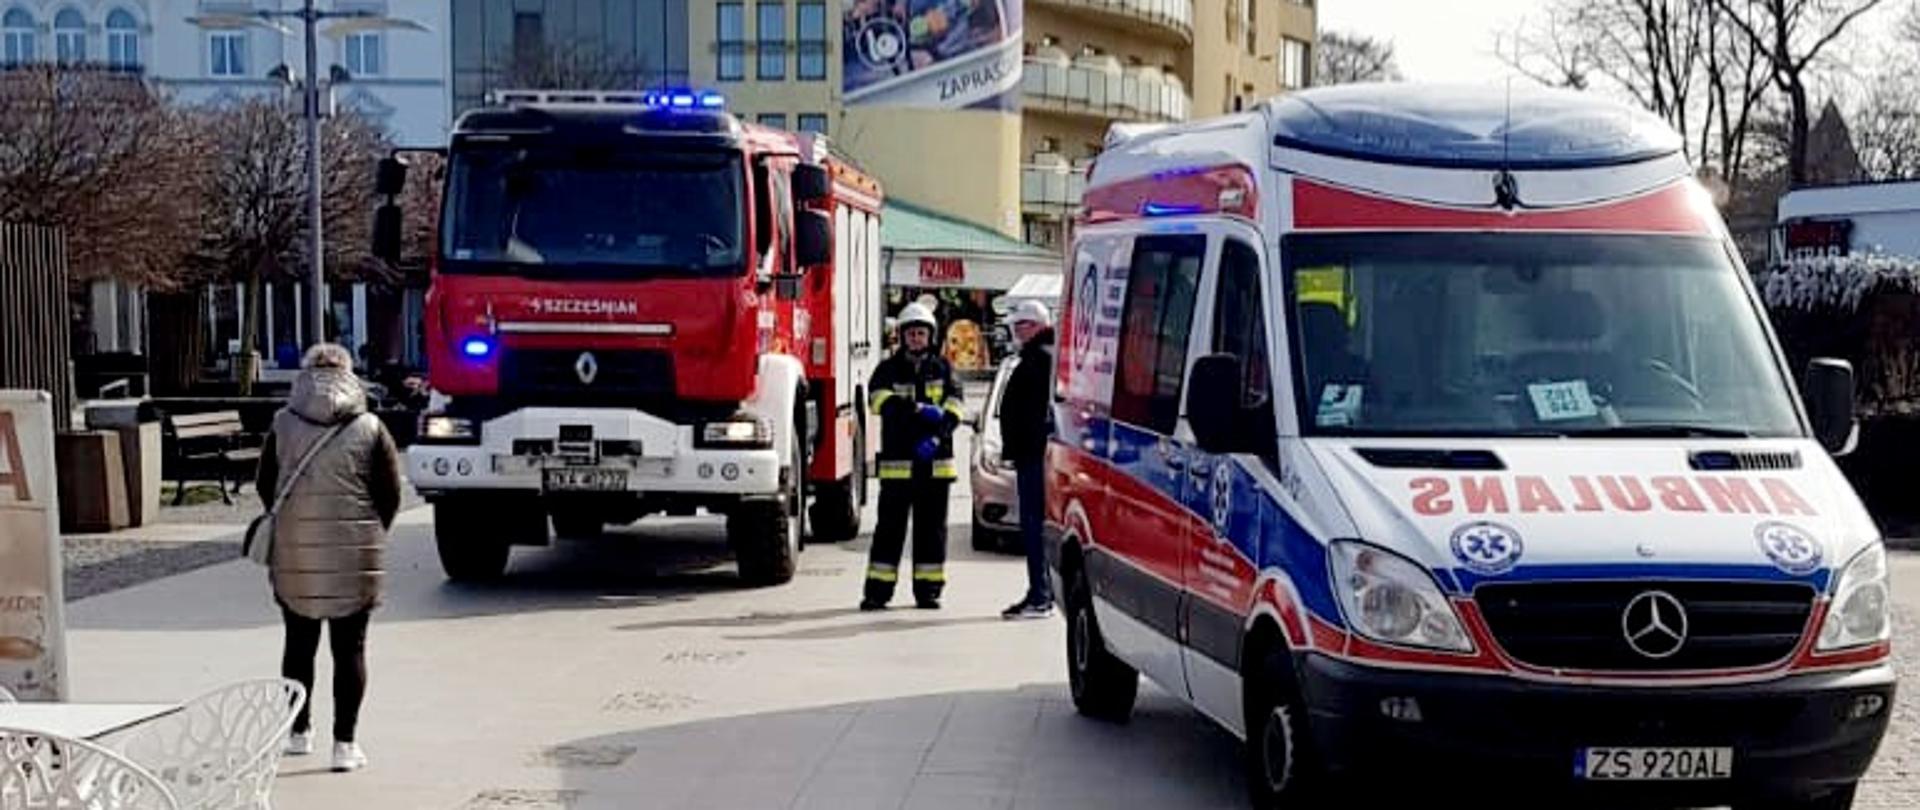 Pojazdy służb ratunkowych na tle budynków